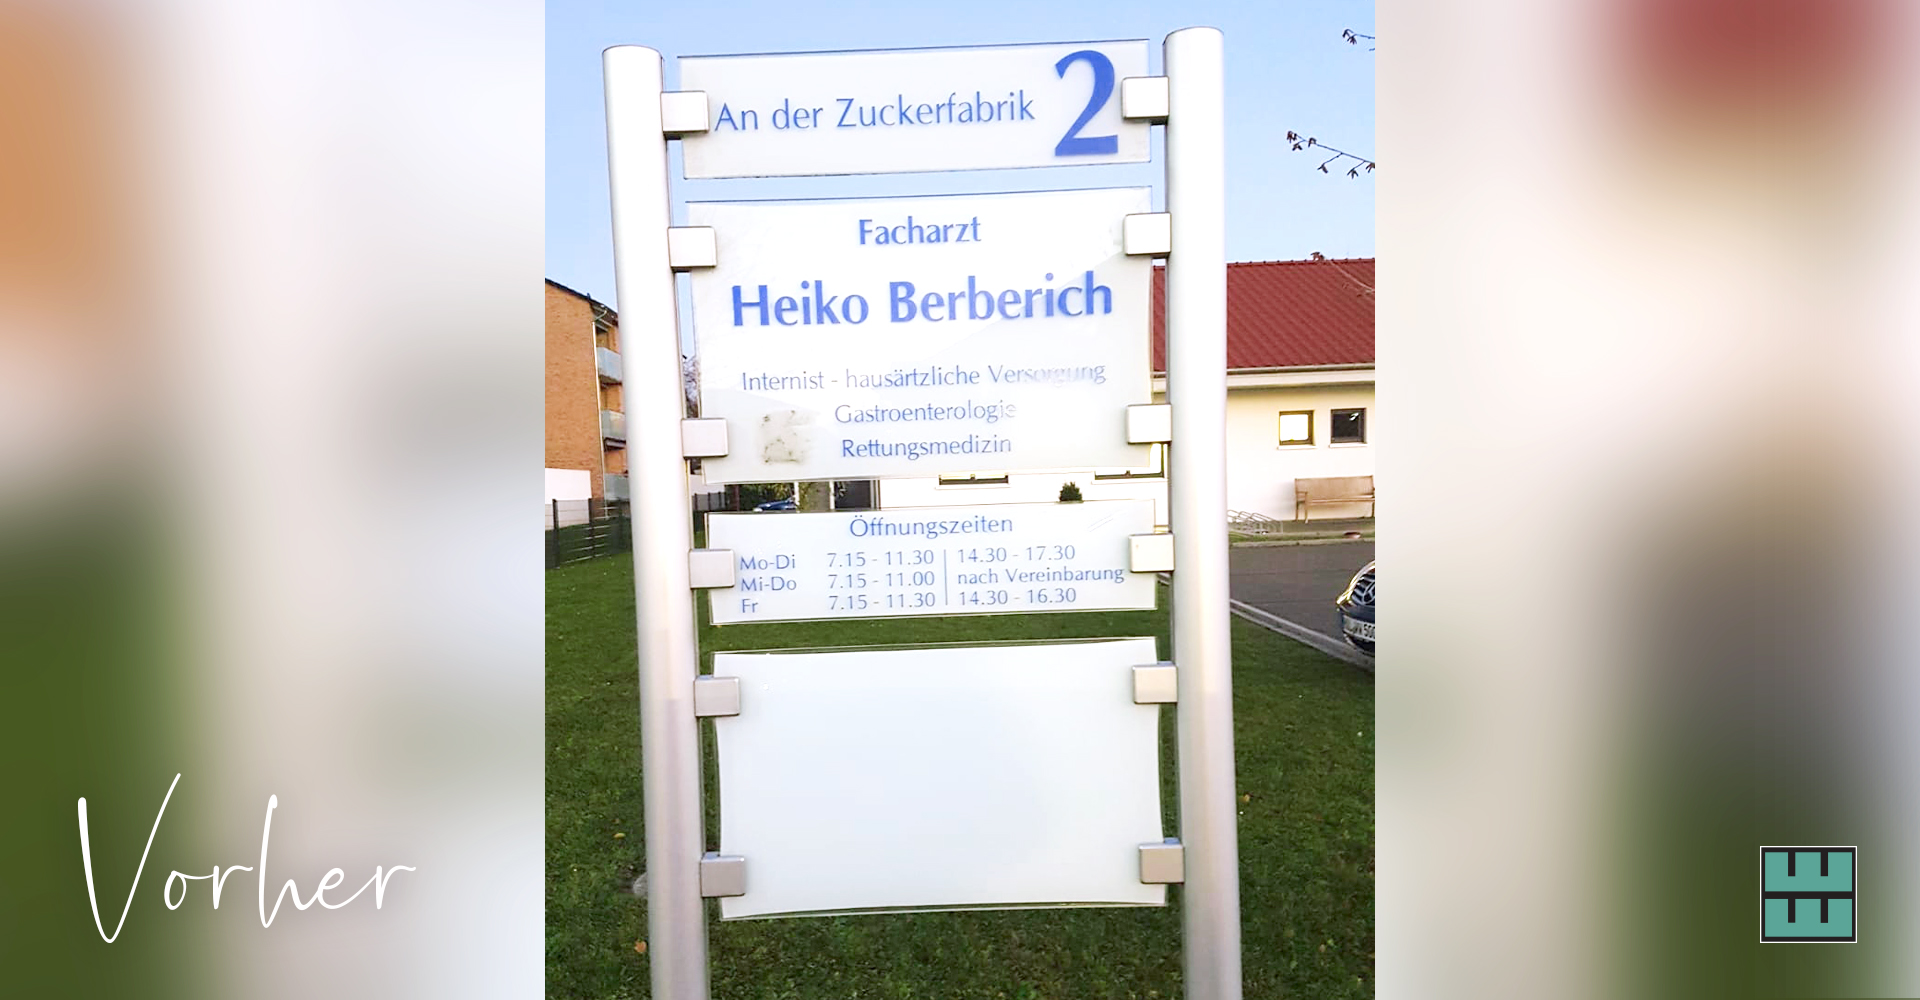 Für die Praxis Berberich aus Gronau haben wir vor kurzem ein neues Schild nicht nur gestaltet, sondern auch bedruckt und montiert.